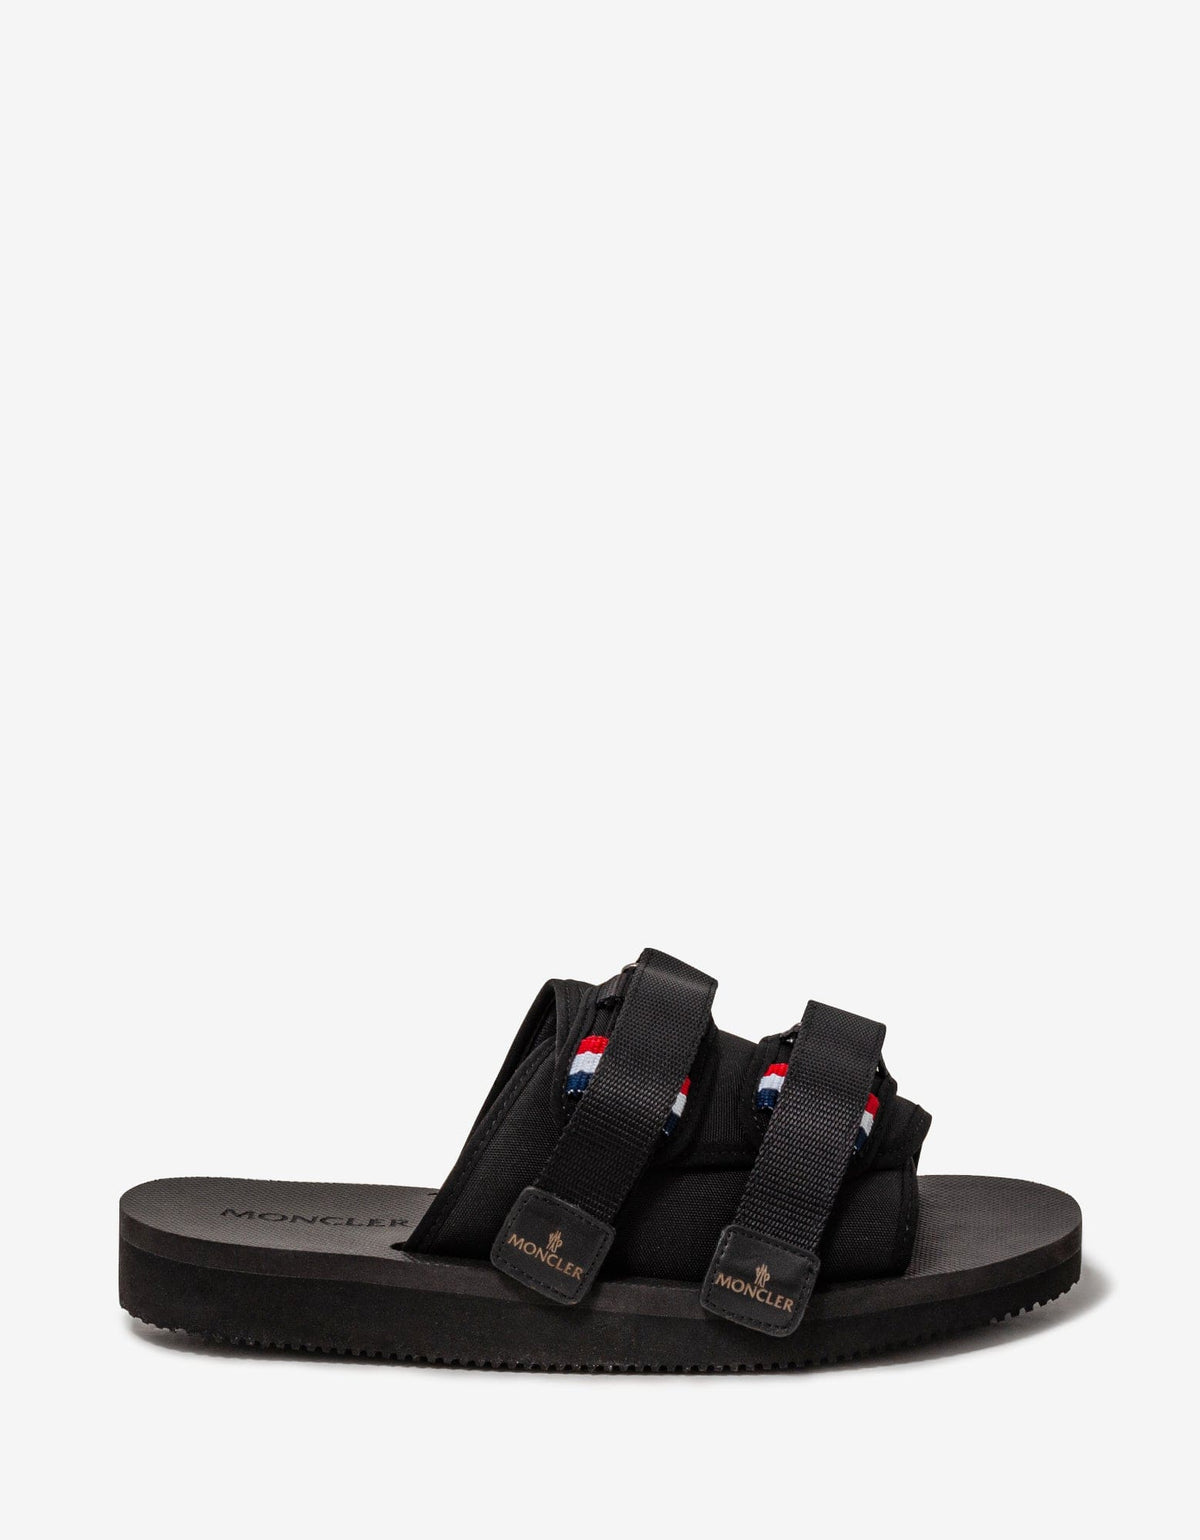 Moncler Moncler Black Slideworks Sandals